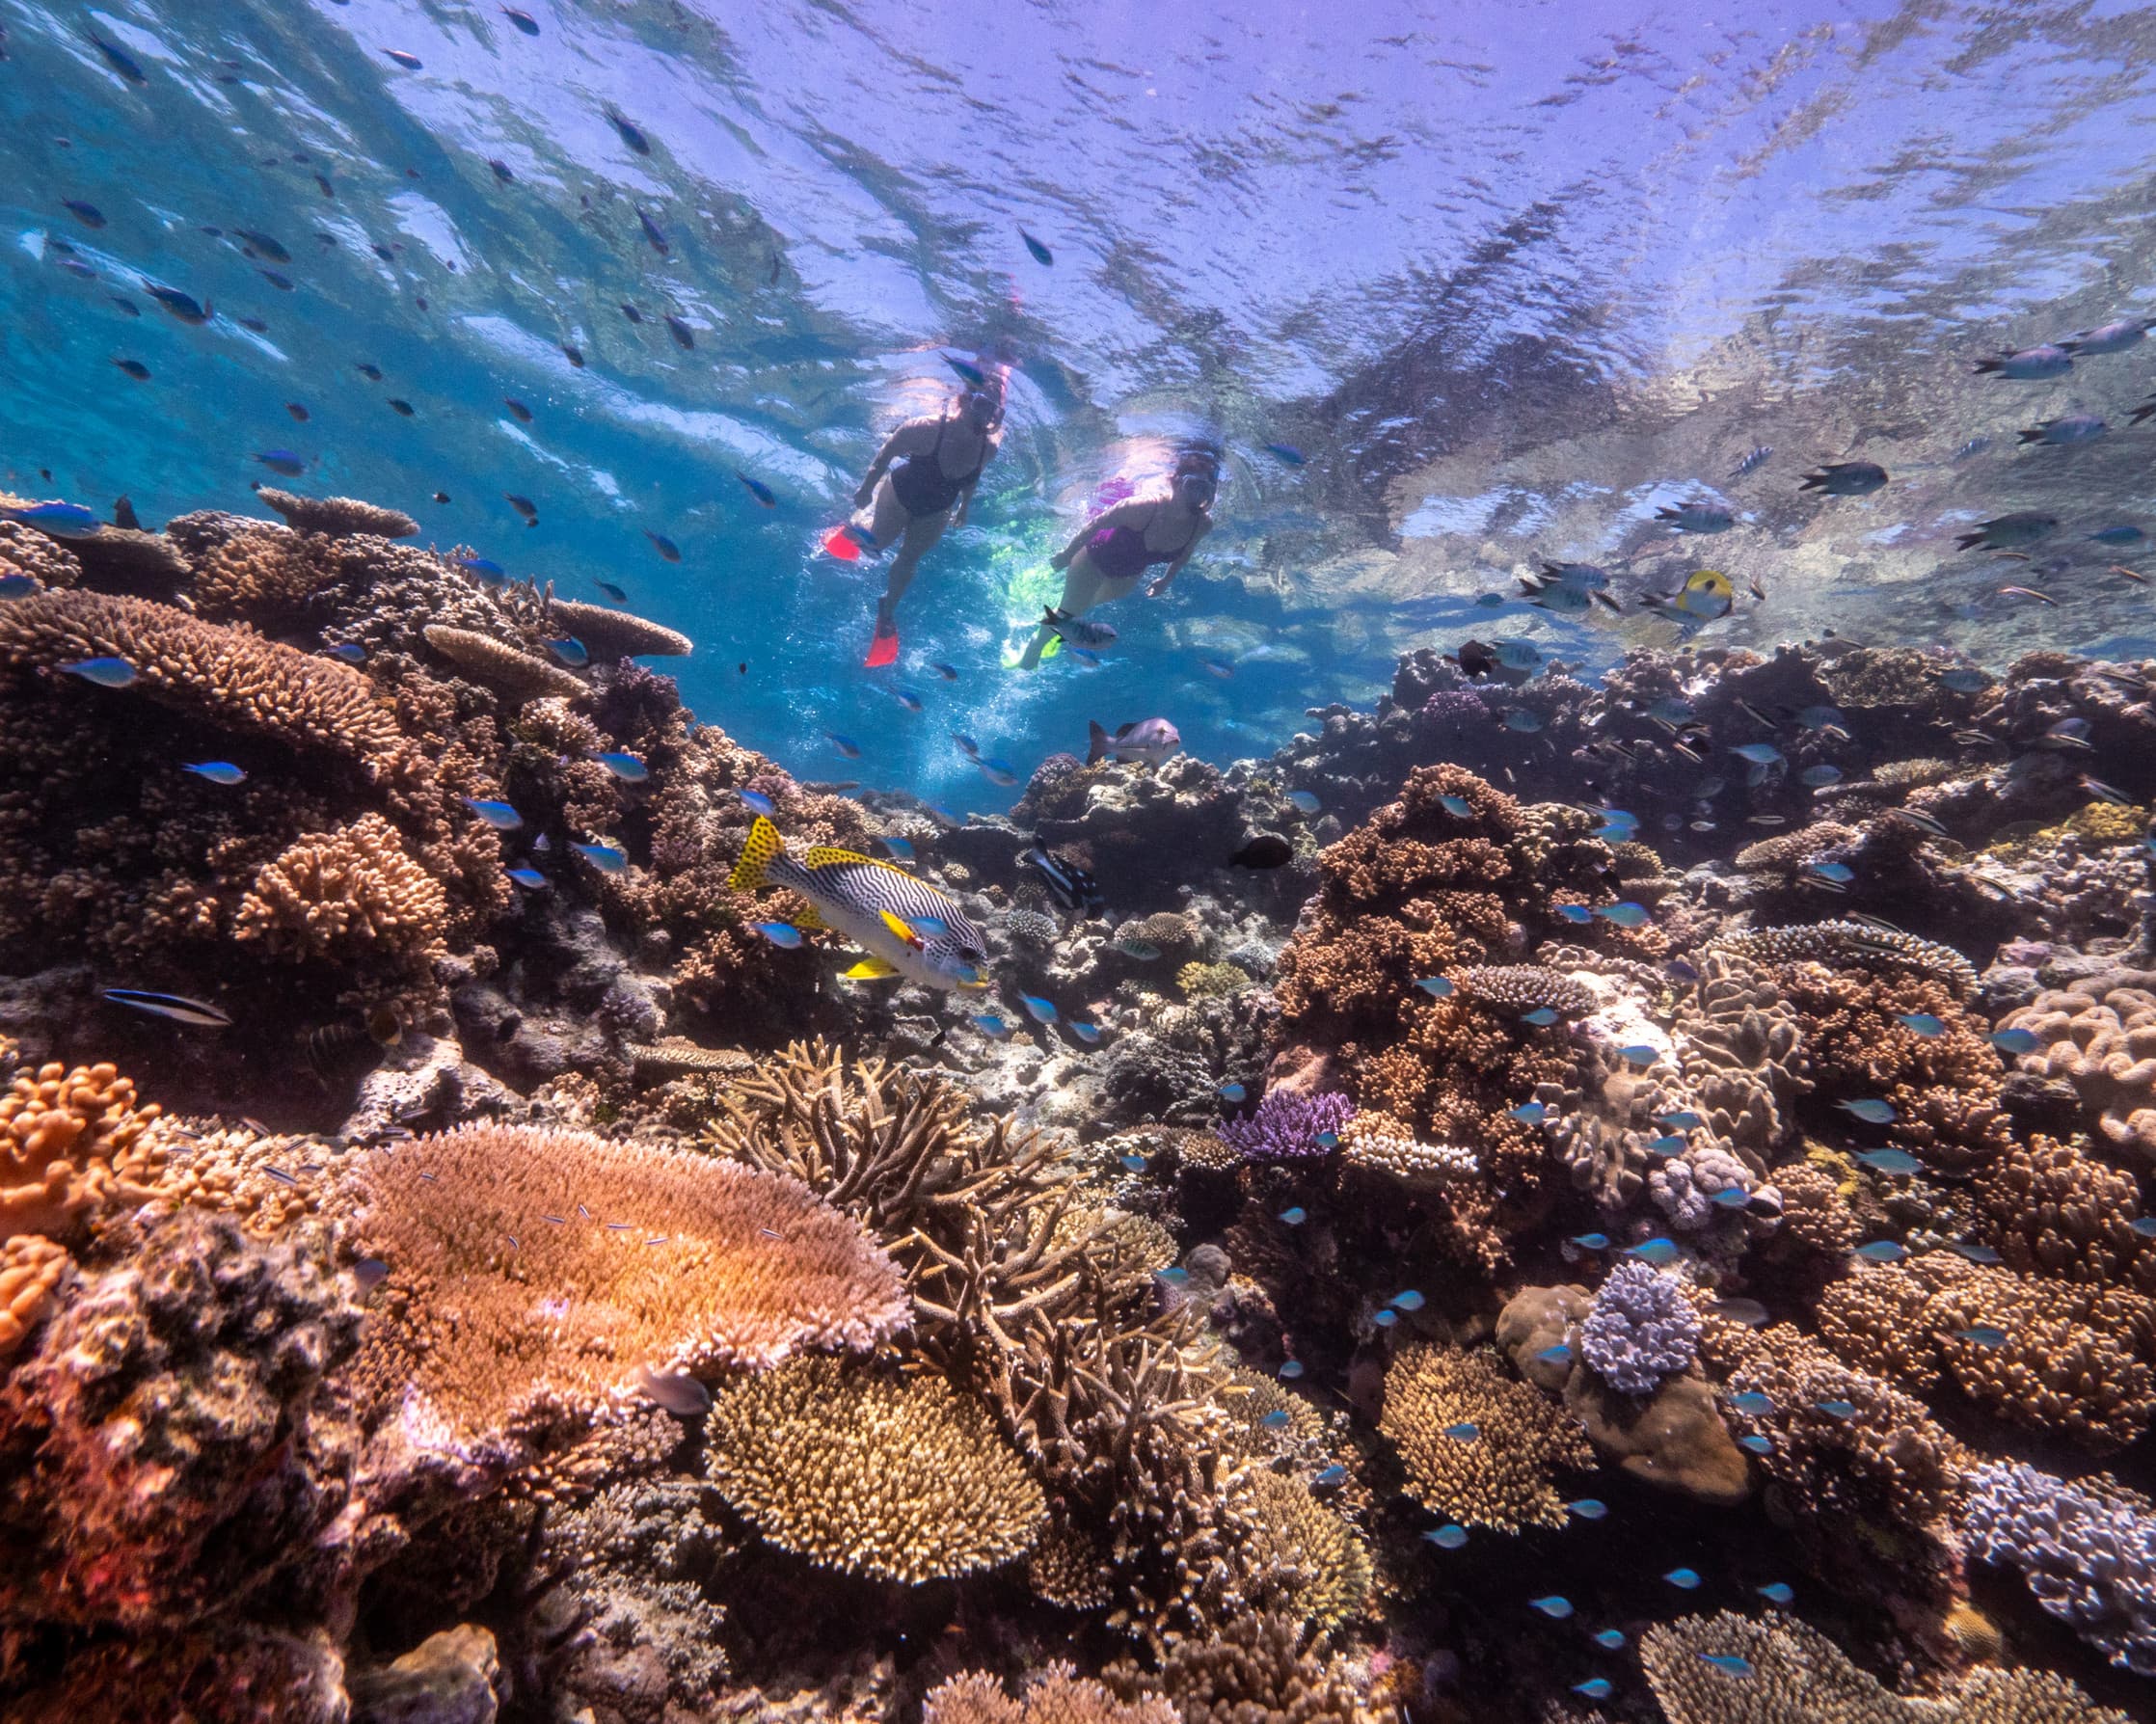 Queenslands Great Barrier Reef seen with Scuba Divers